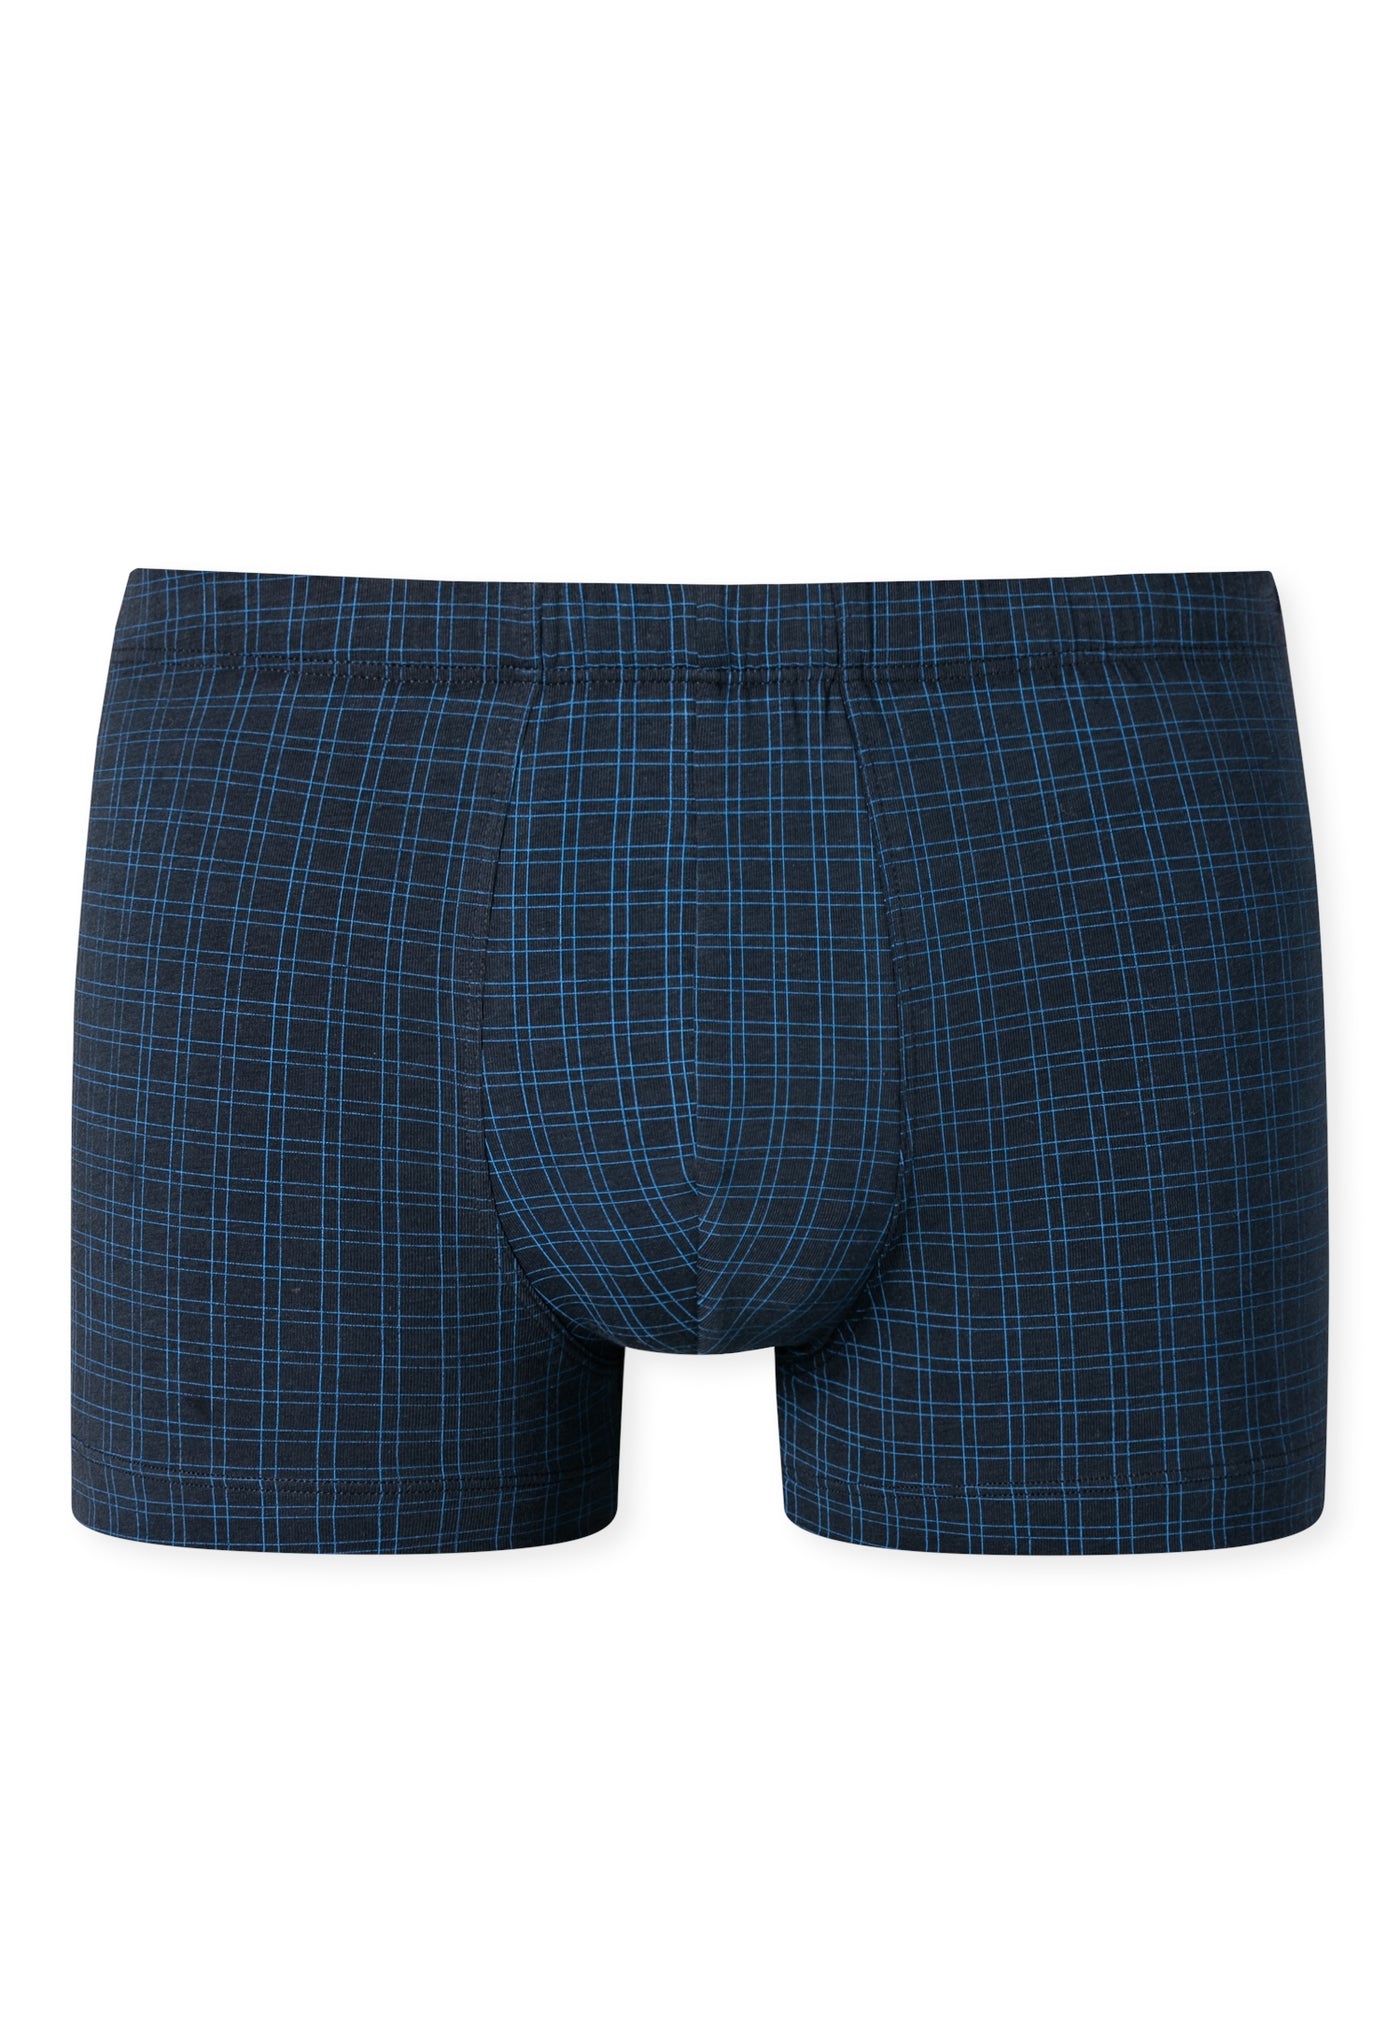 Schiesser - Cotton Casuals - Shorts - NEW